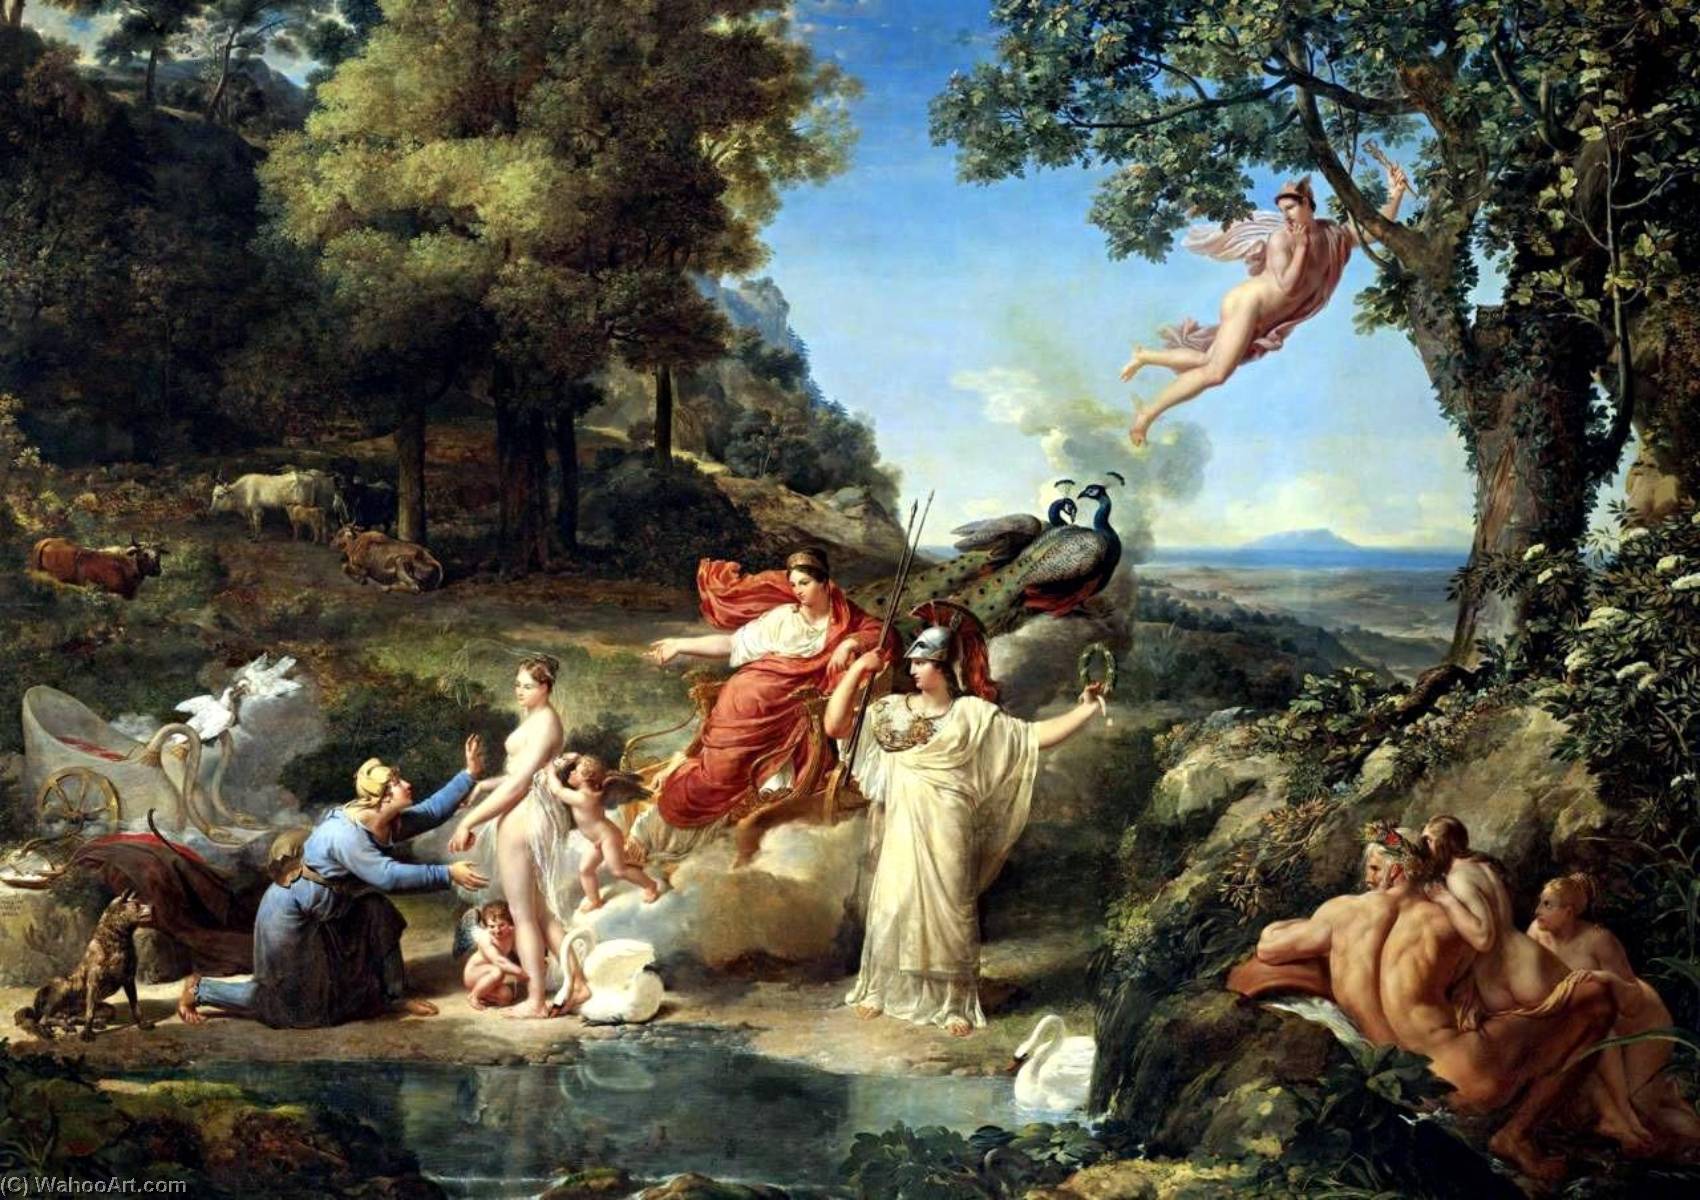 WikiOO.org - Enciclopédia das Belas Artes - Pintura, Arte por Guillaume Lethière - The Judgment of Paris